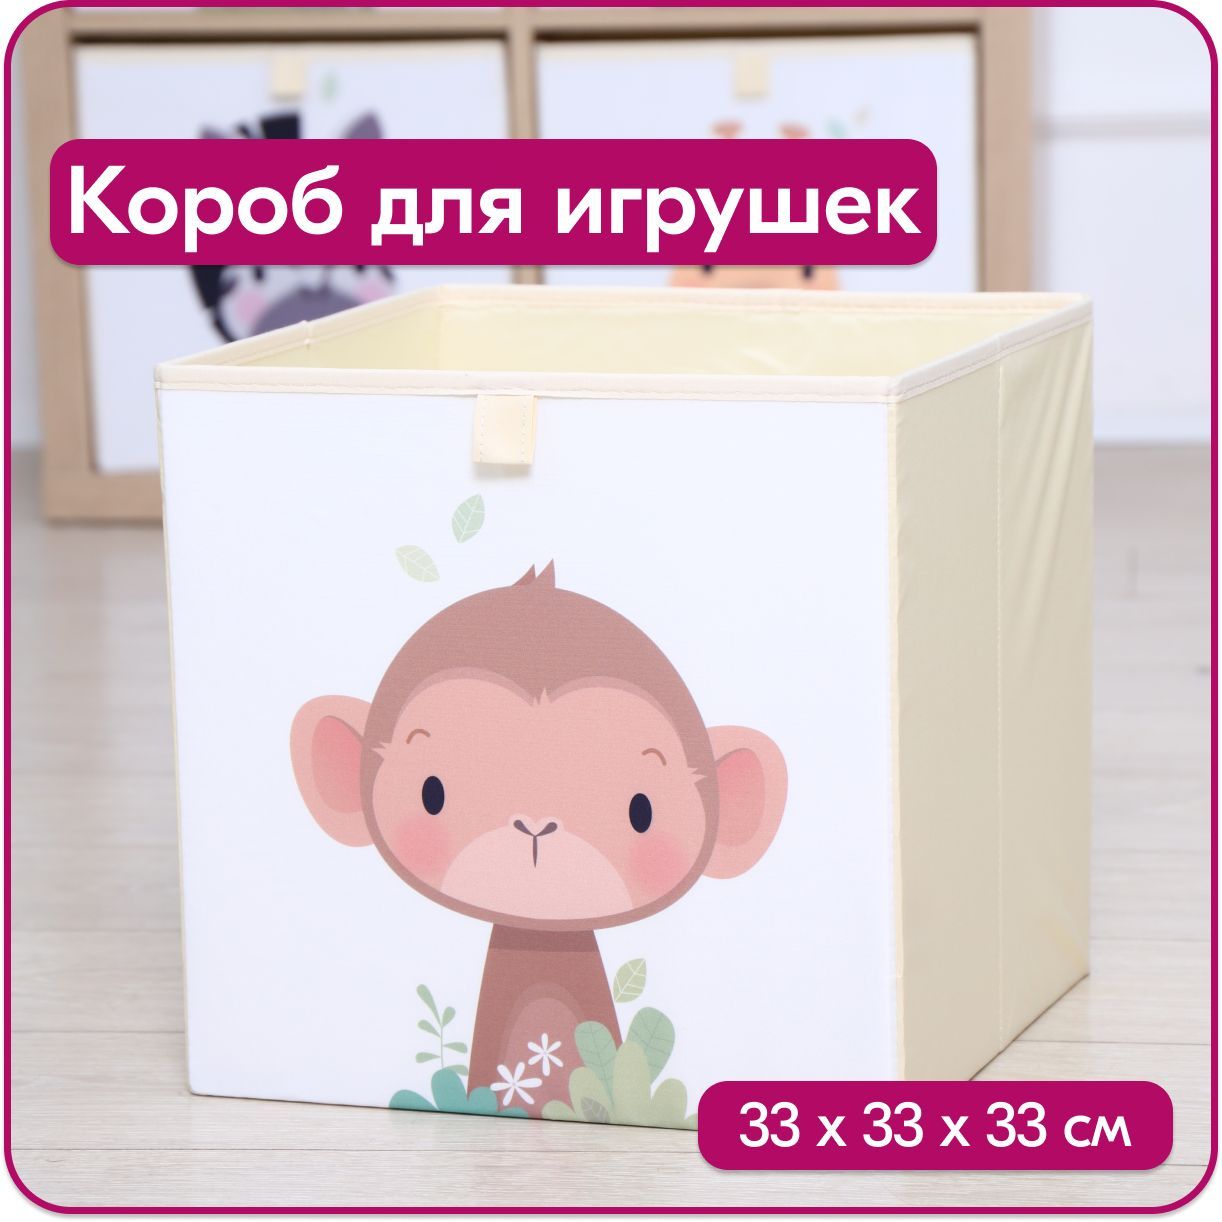 Ящик для игрушек HappySava Обезьяна размер 33x33x33 см объем 35